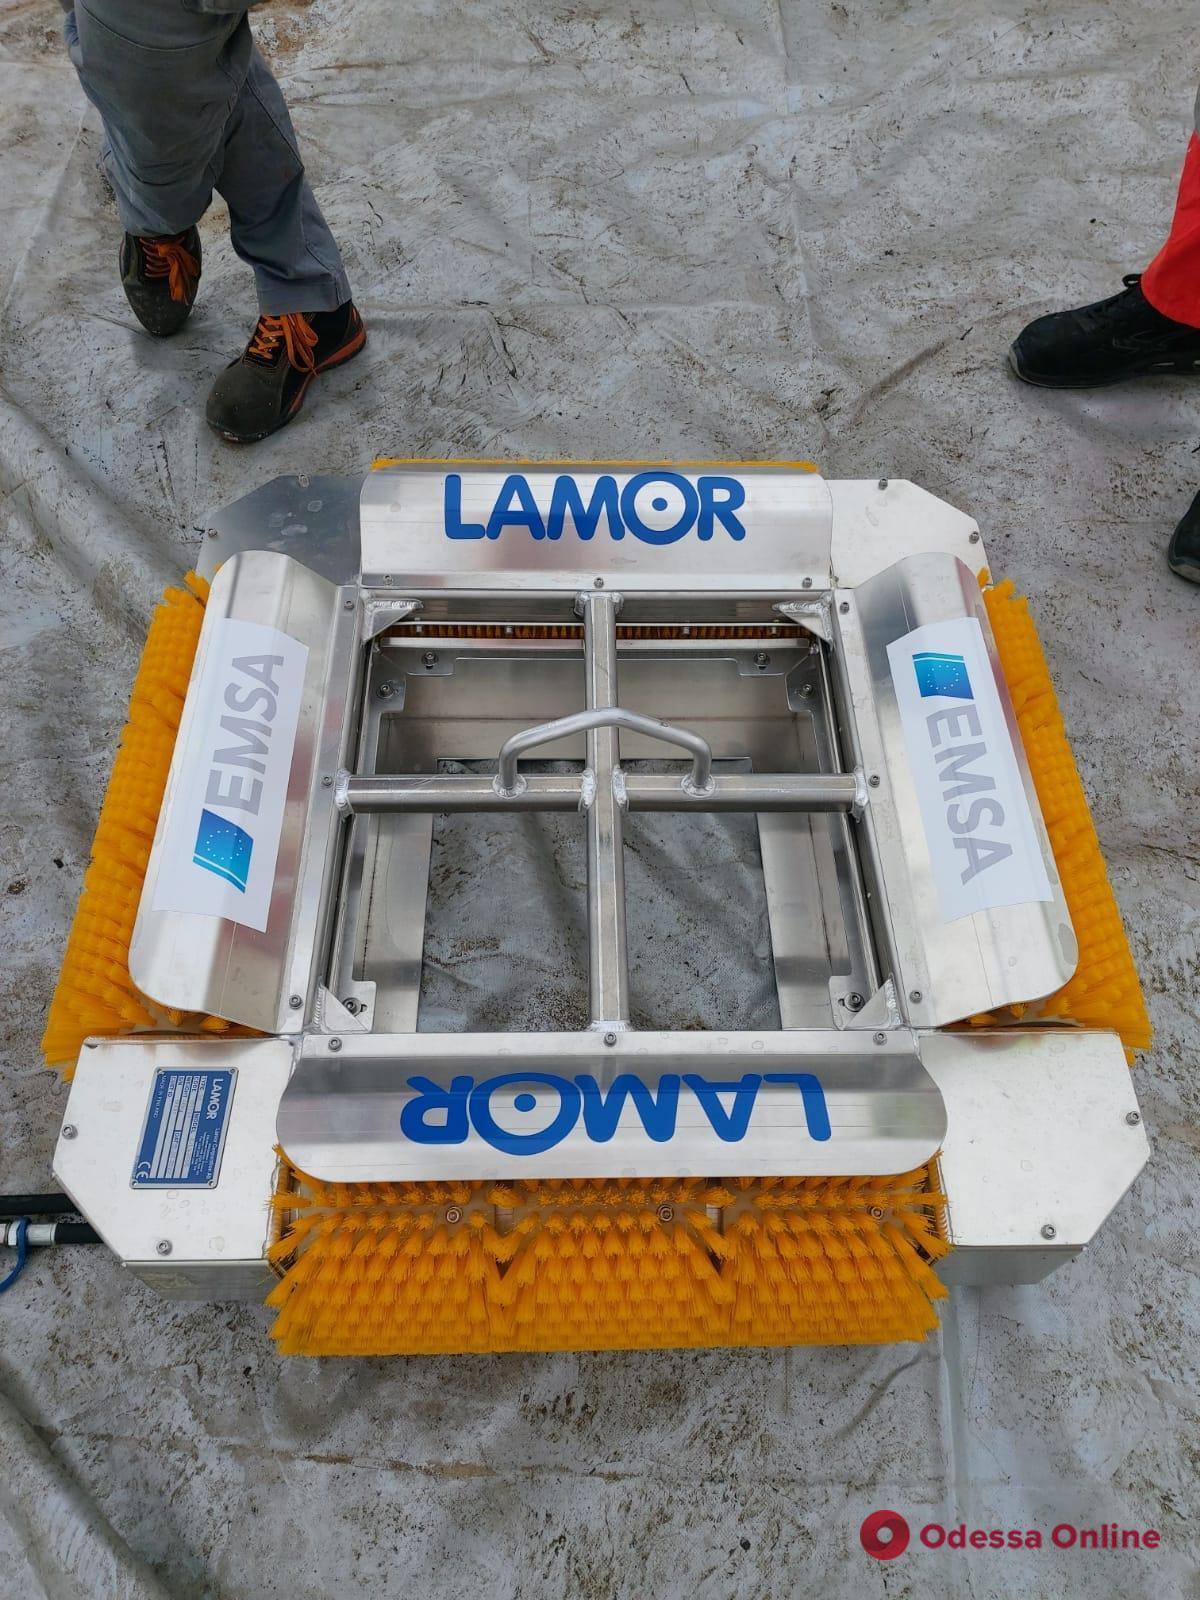 Одеська філія АМПУ отримає обладнання для локалізації та ліквідації забруднень у морі